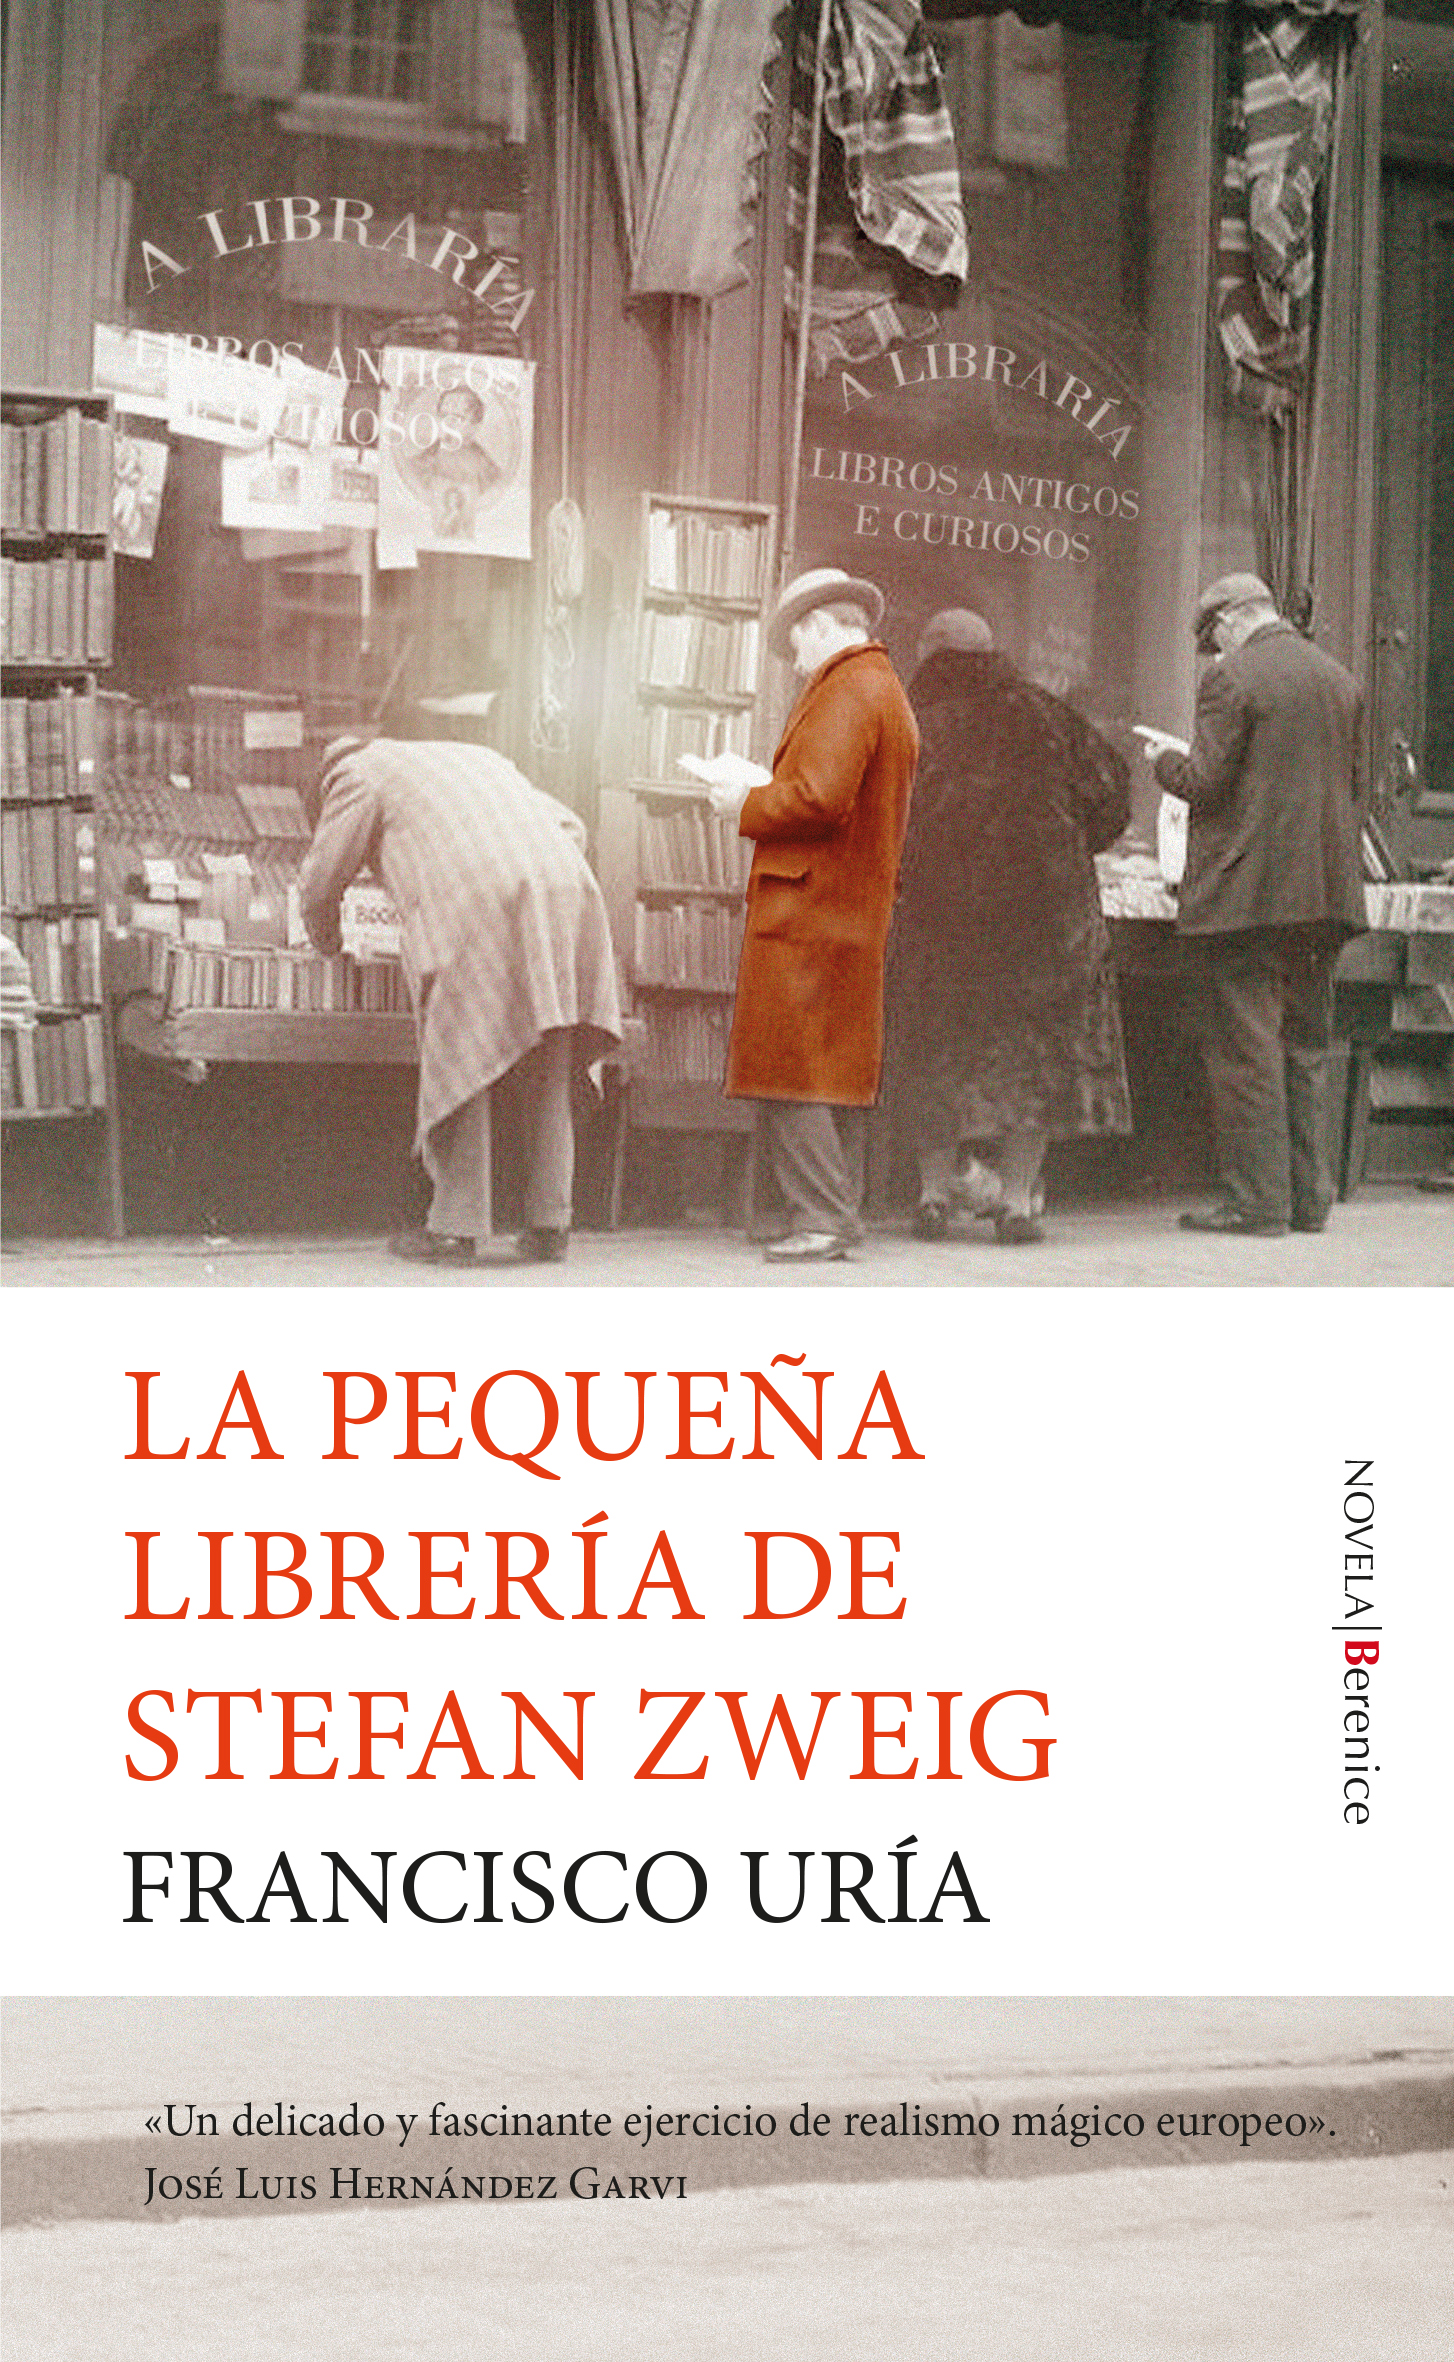 La pequeña librería de Stefan Zweig